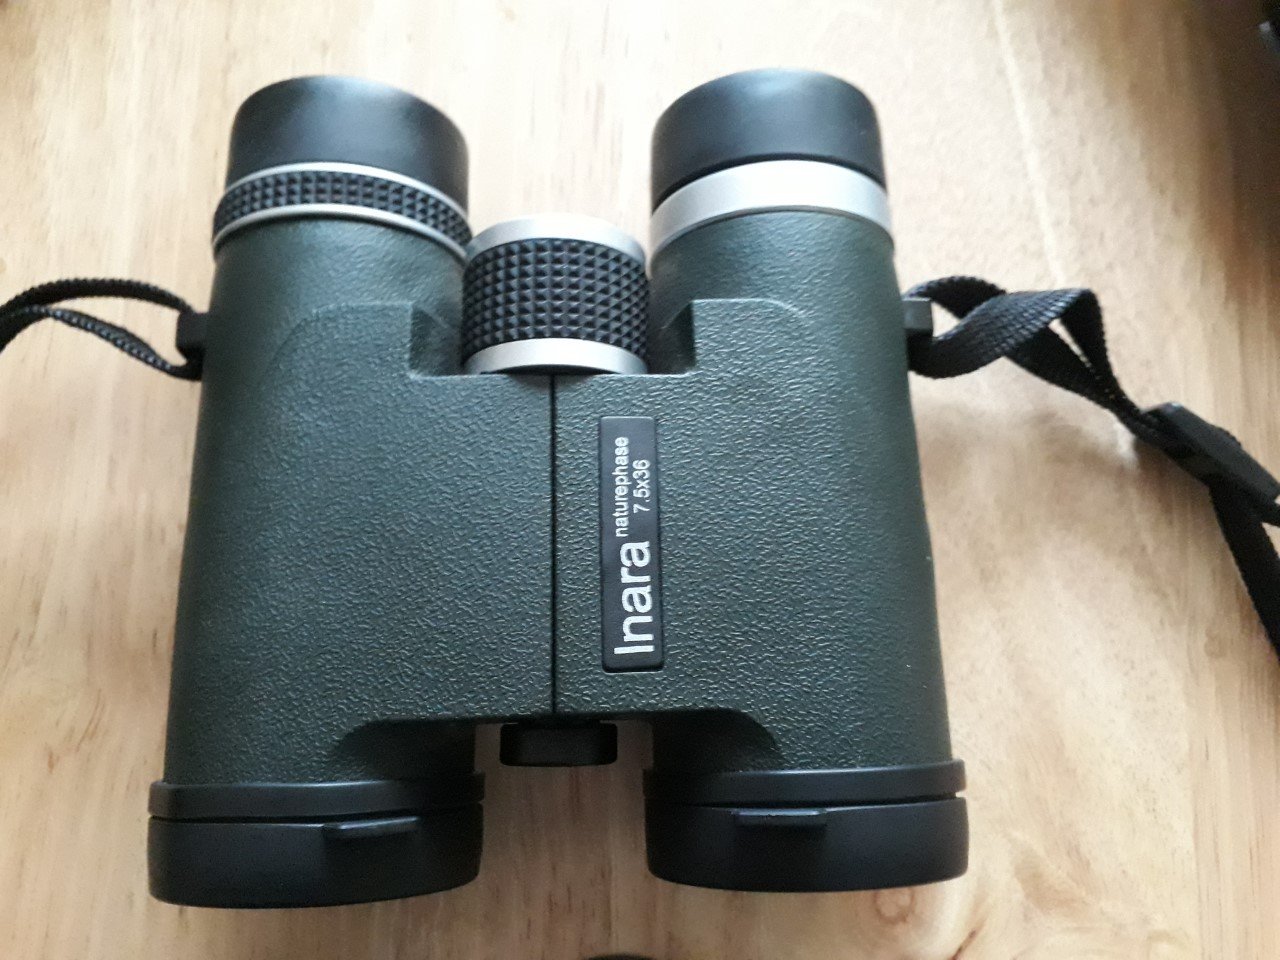 Visionary Inara 7.5x36 Binoculars